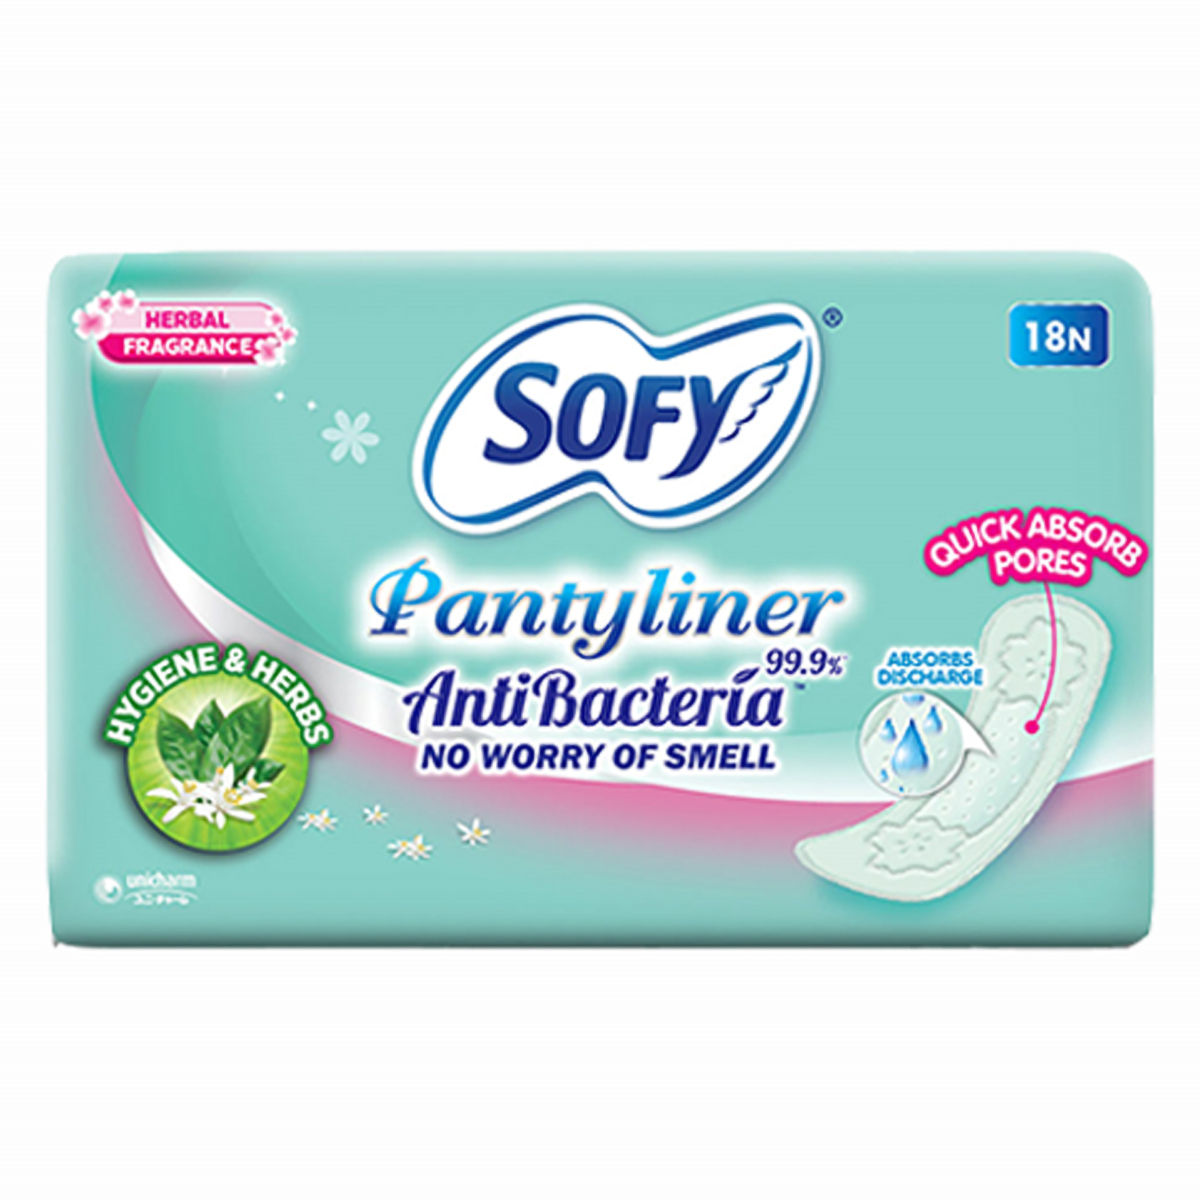 Buy Sofy Antibacteria Pantyliner, 18 Count Online